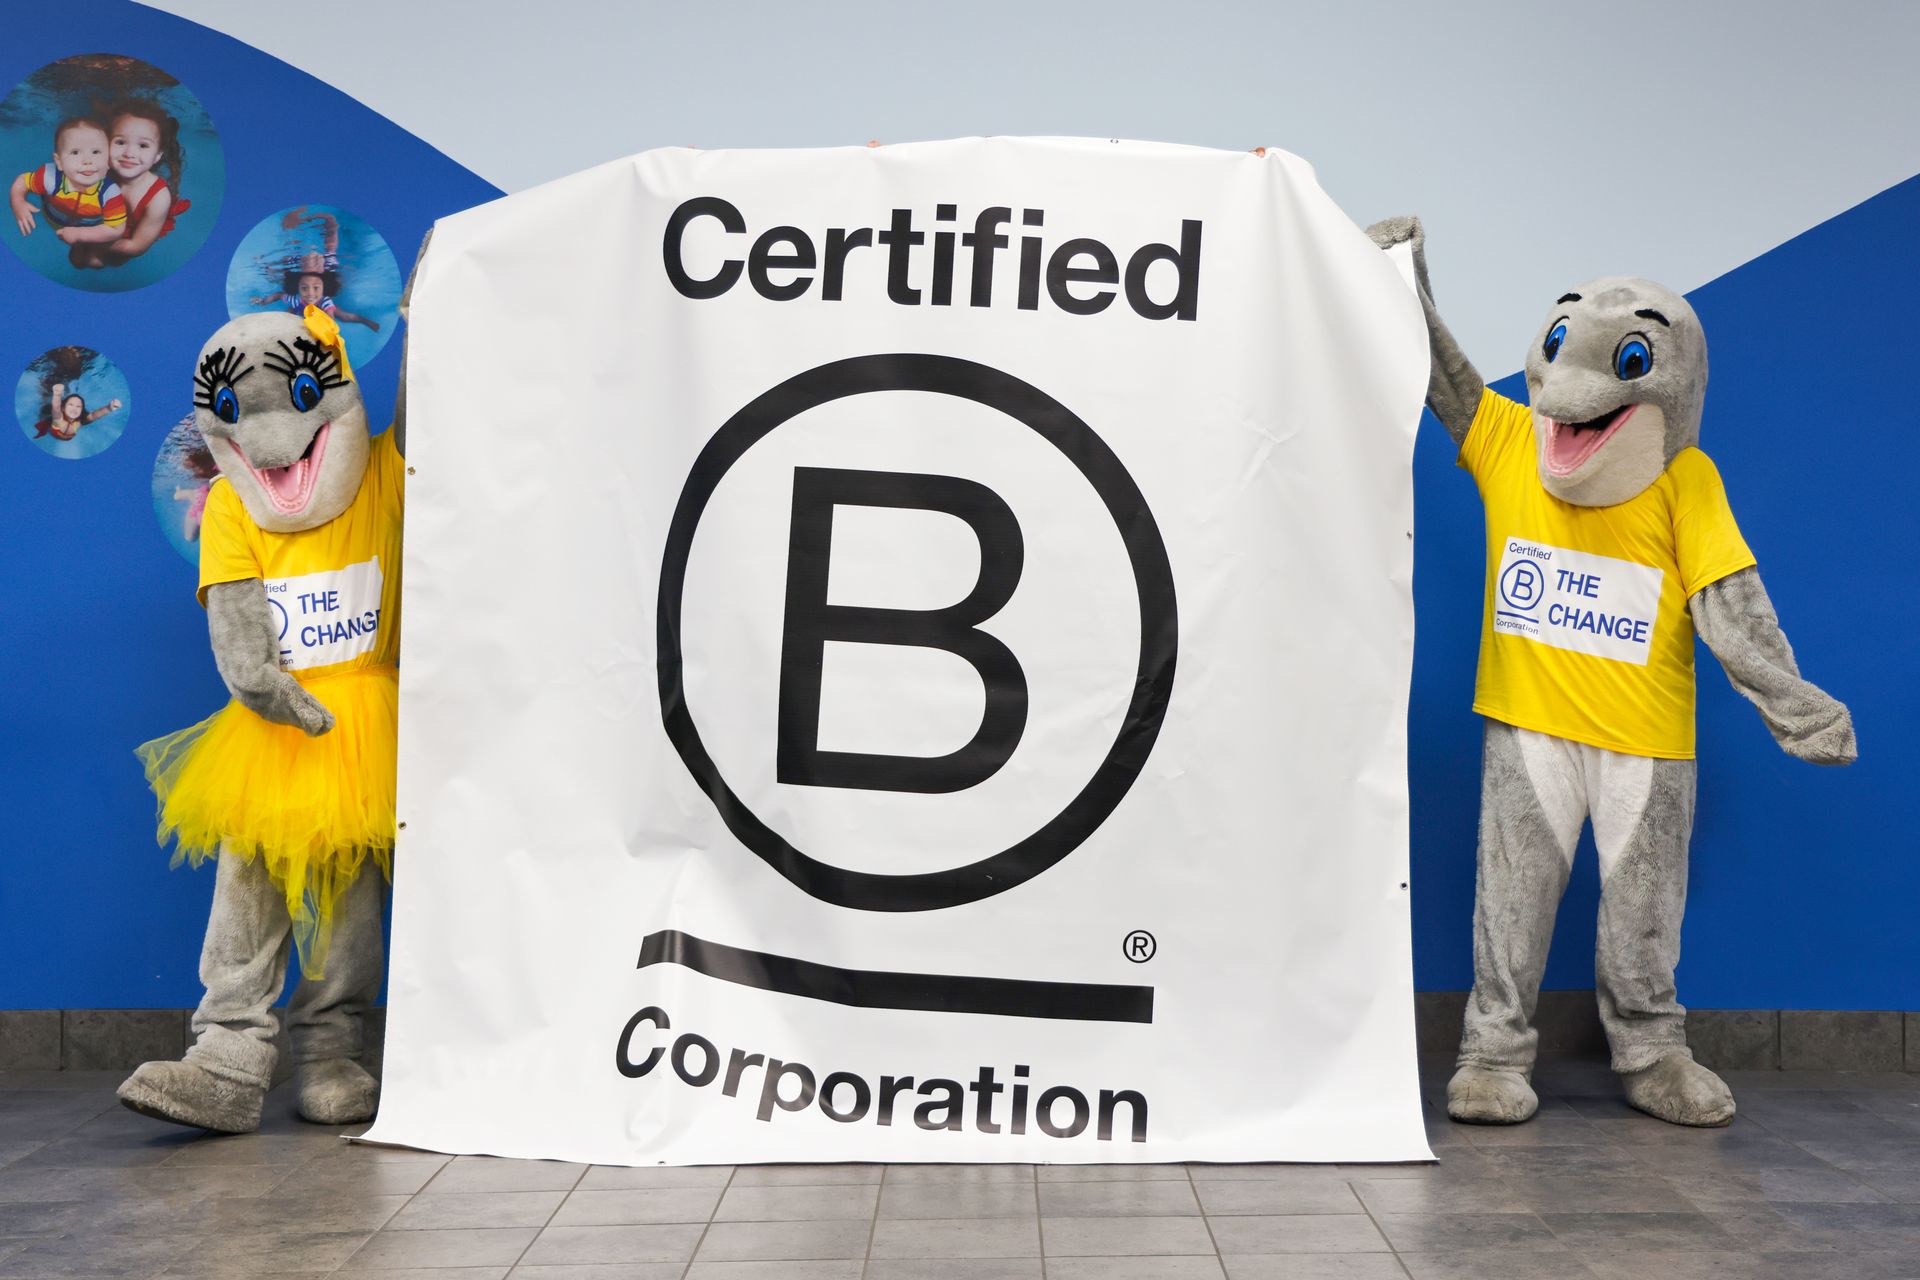 Las mascotas de Ocaquatics sostienen un cartel de corporación b certificada